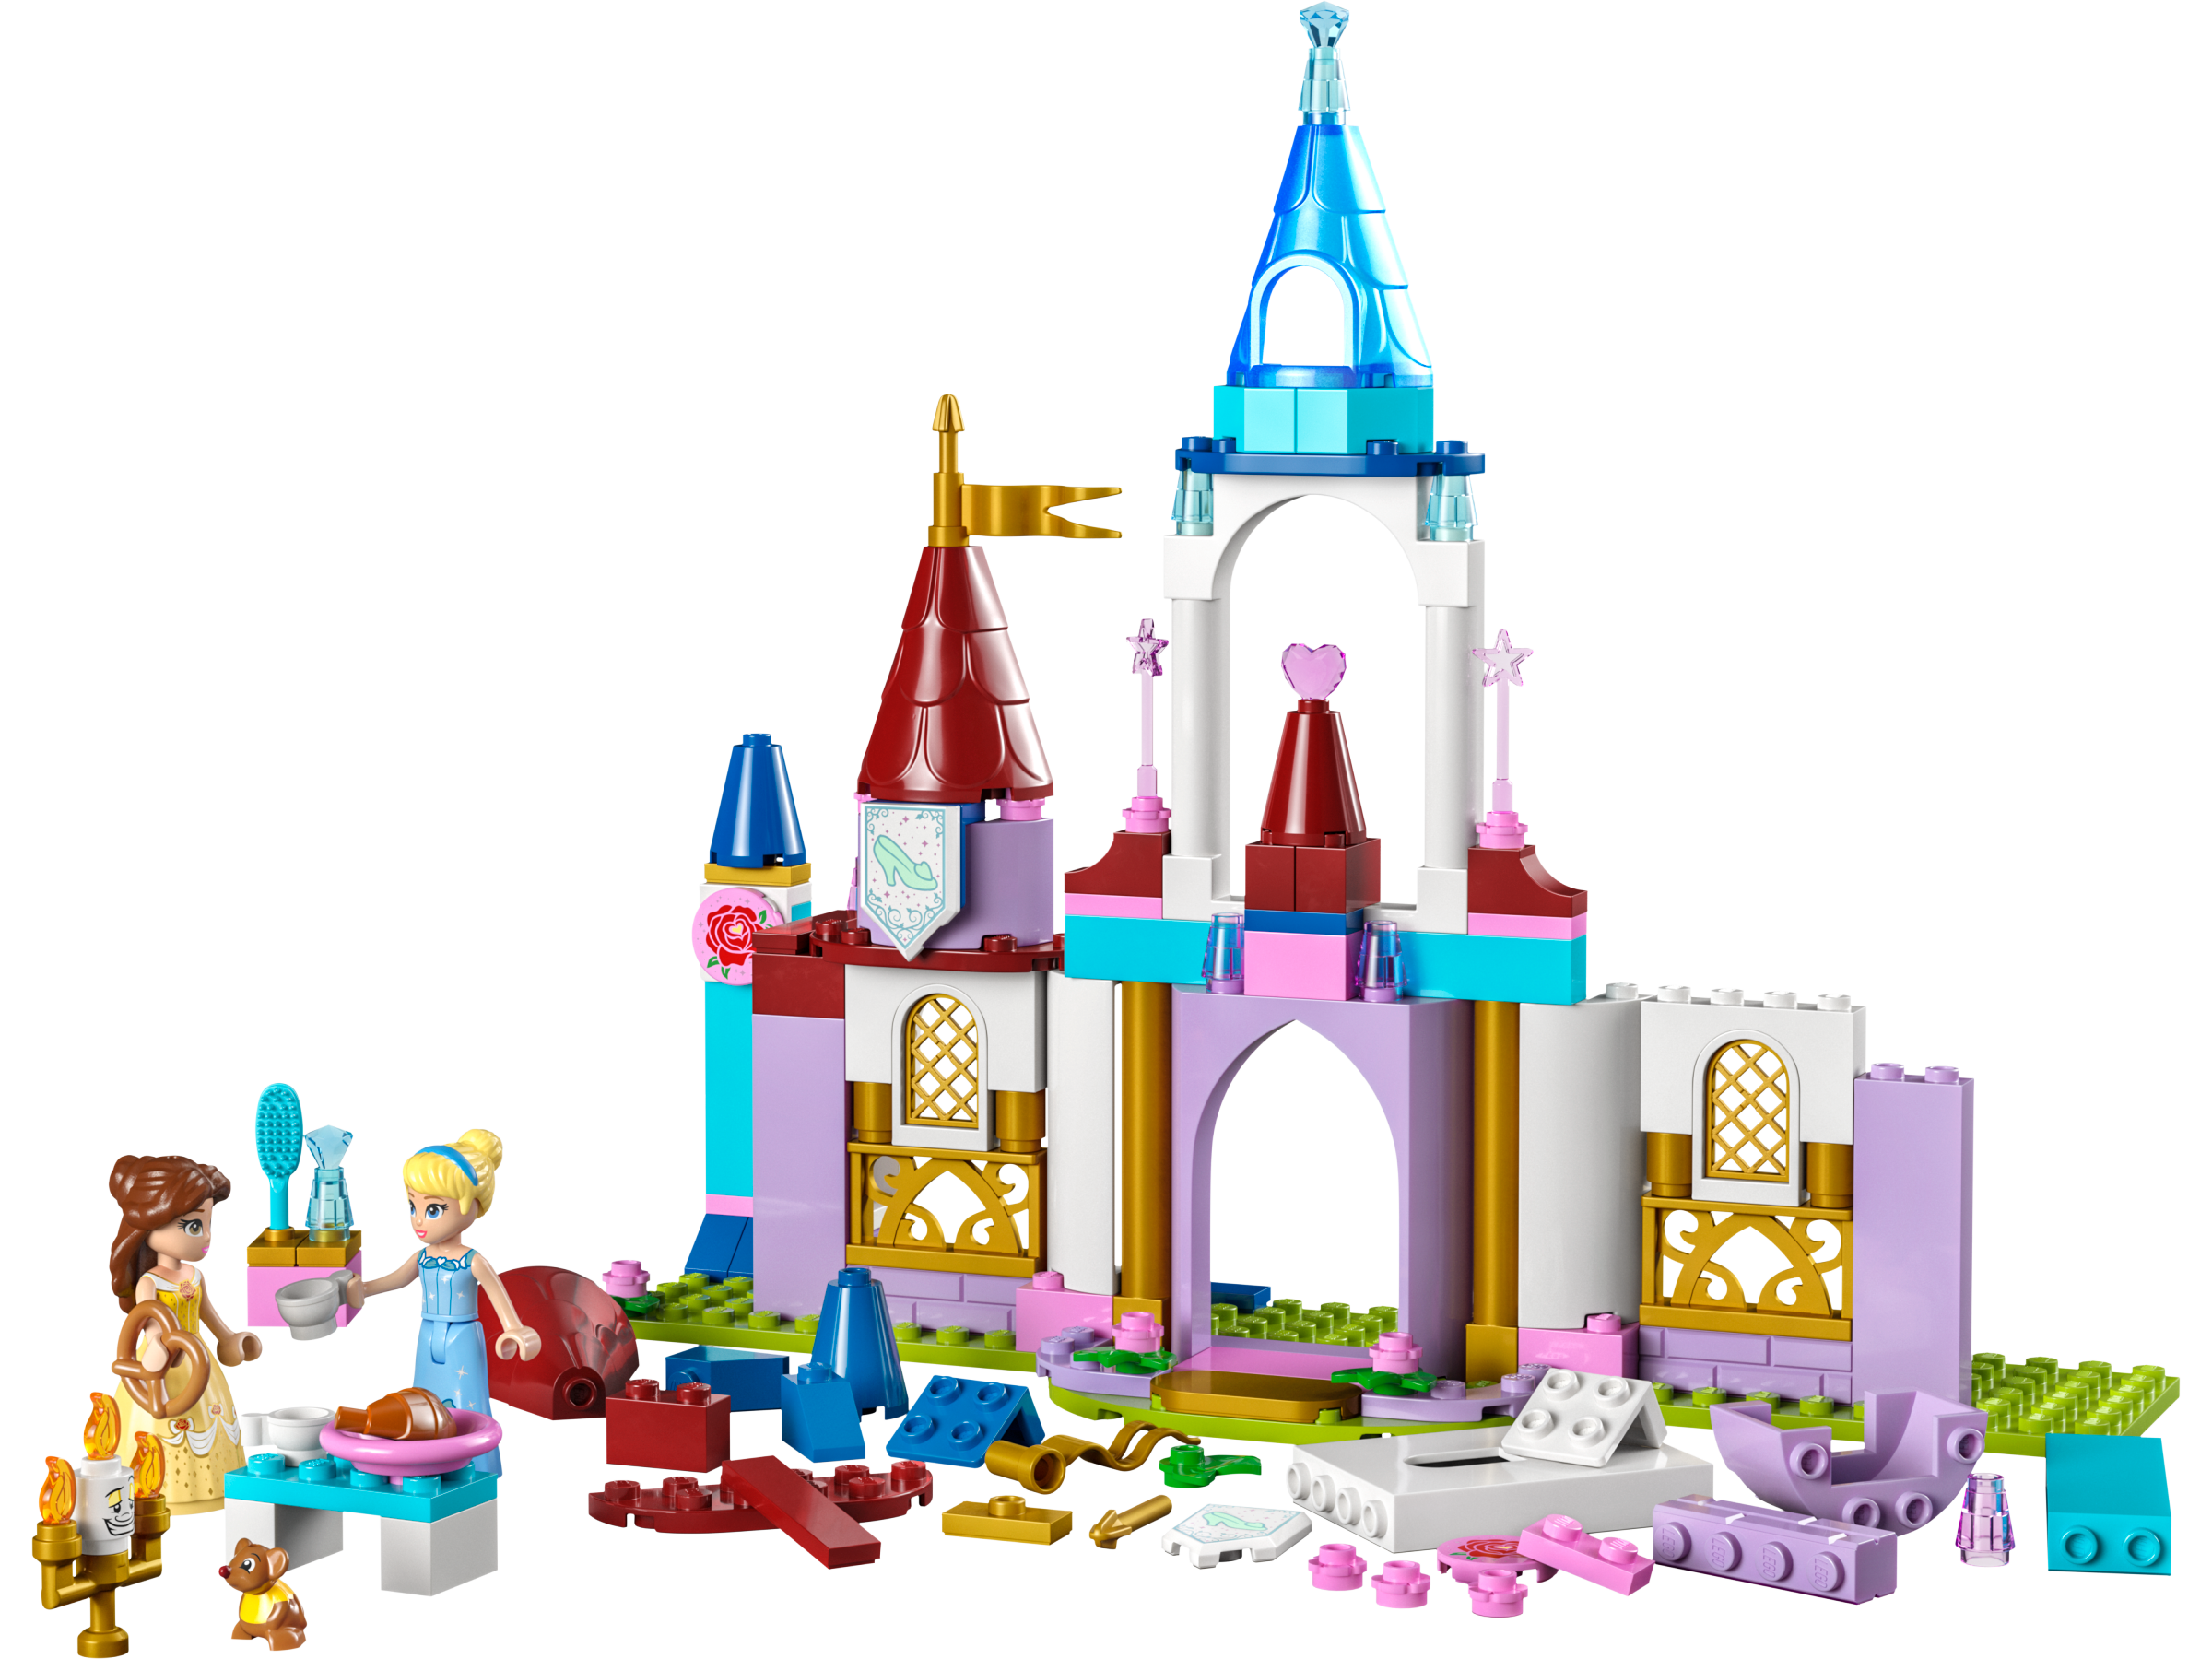 ディズニー プリンセス おとぎのお城 43219 | ディズニー™ |レゴ